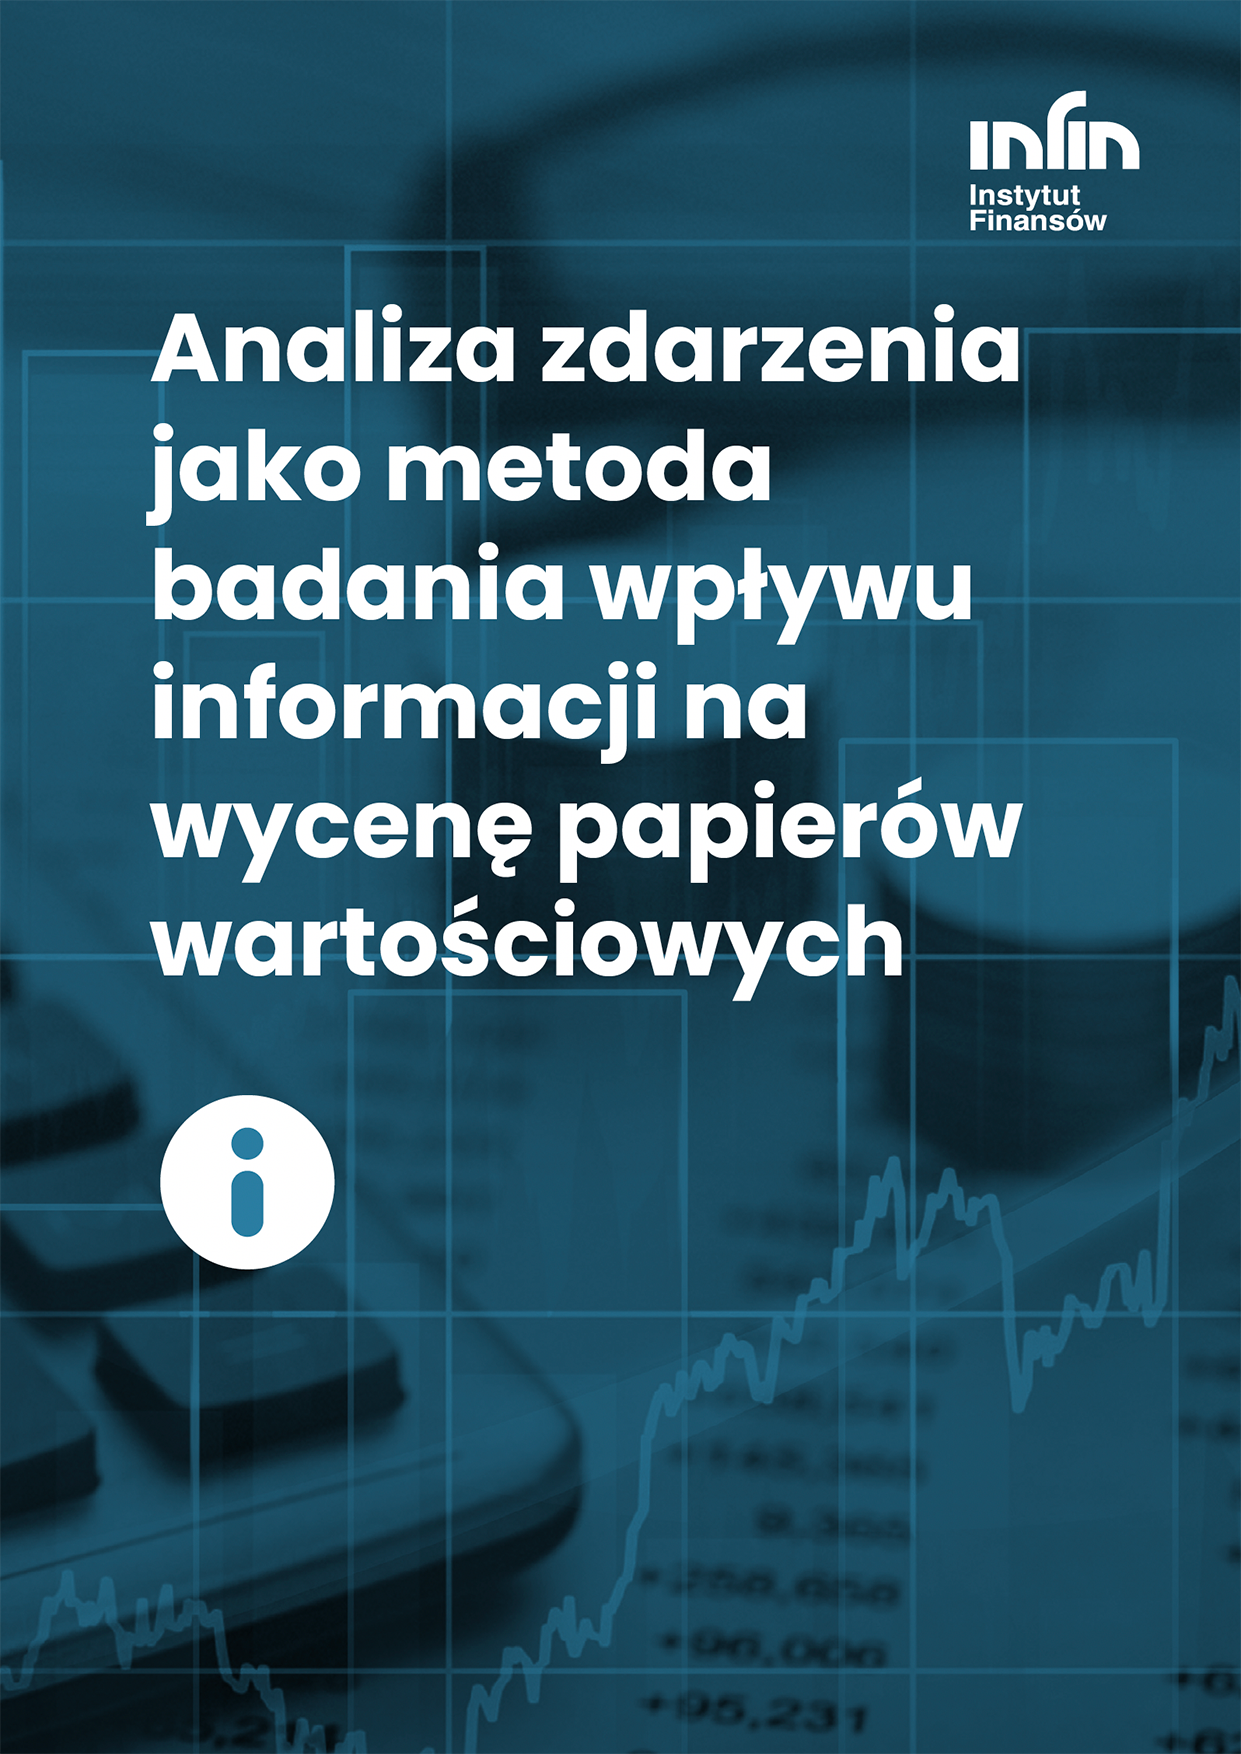 Tekst: Analiza zdarzenia jako metoda badania wpływu informacji na wycenę papierów wartościowych.